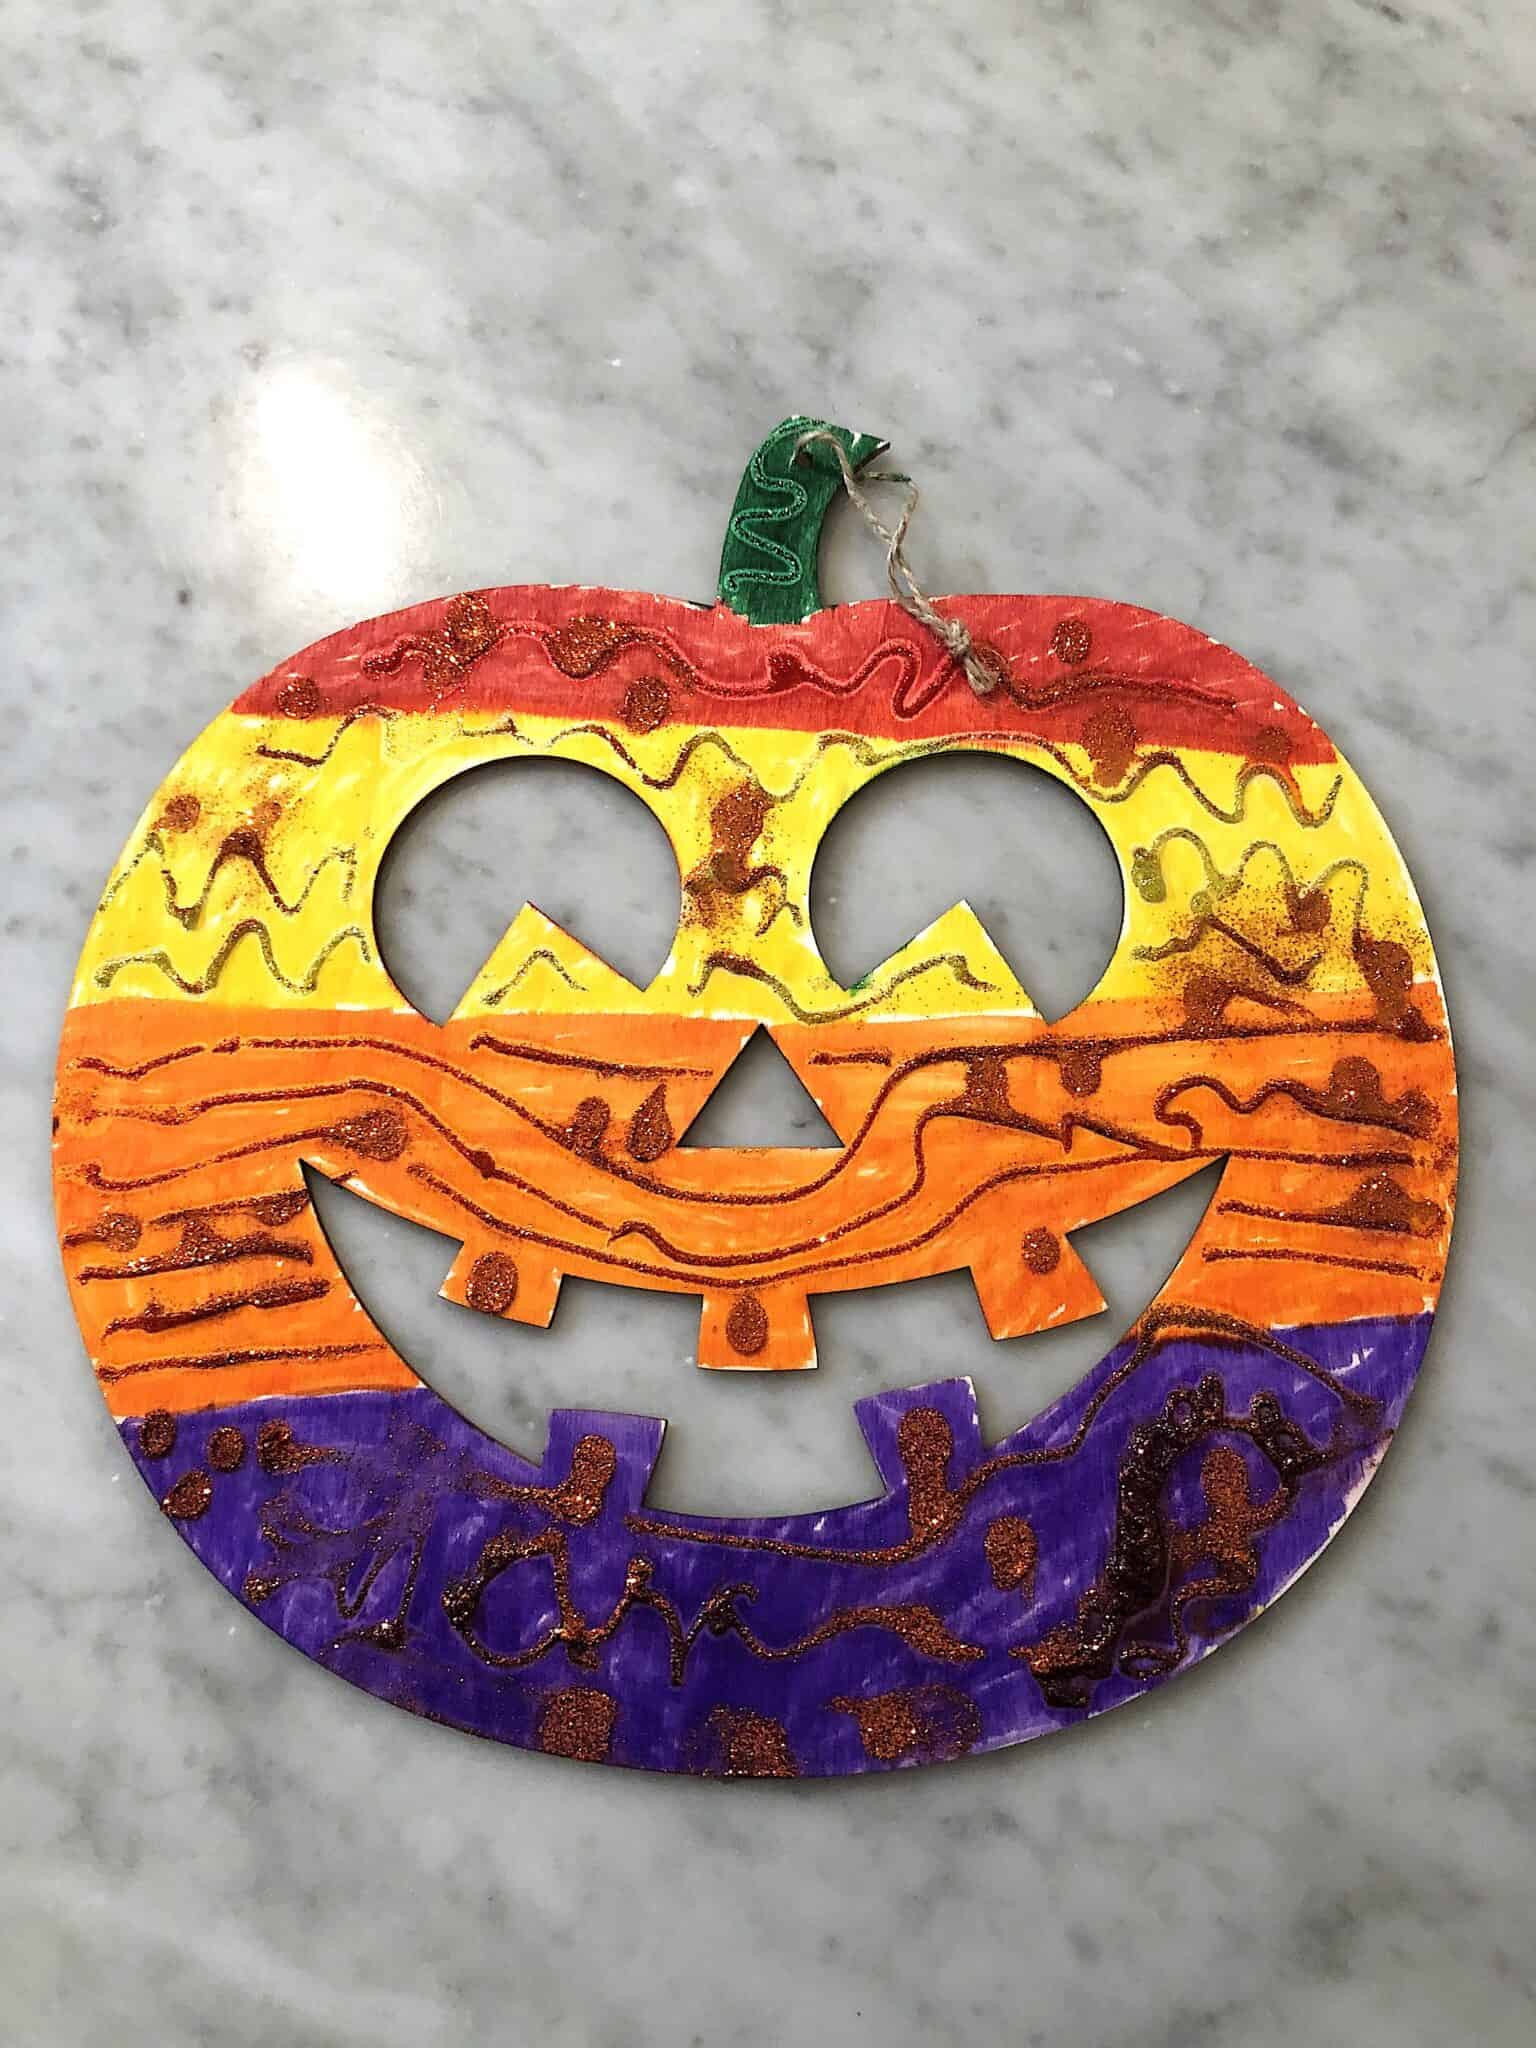 kindergarten-halloween-crafts-7-easy-halloween-activities-for